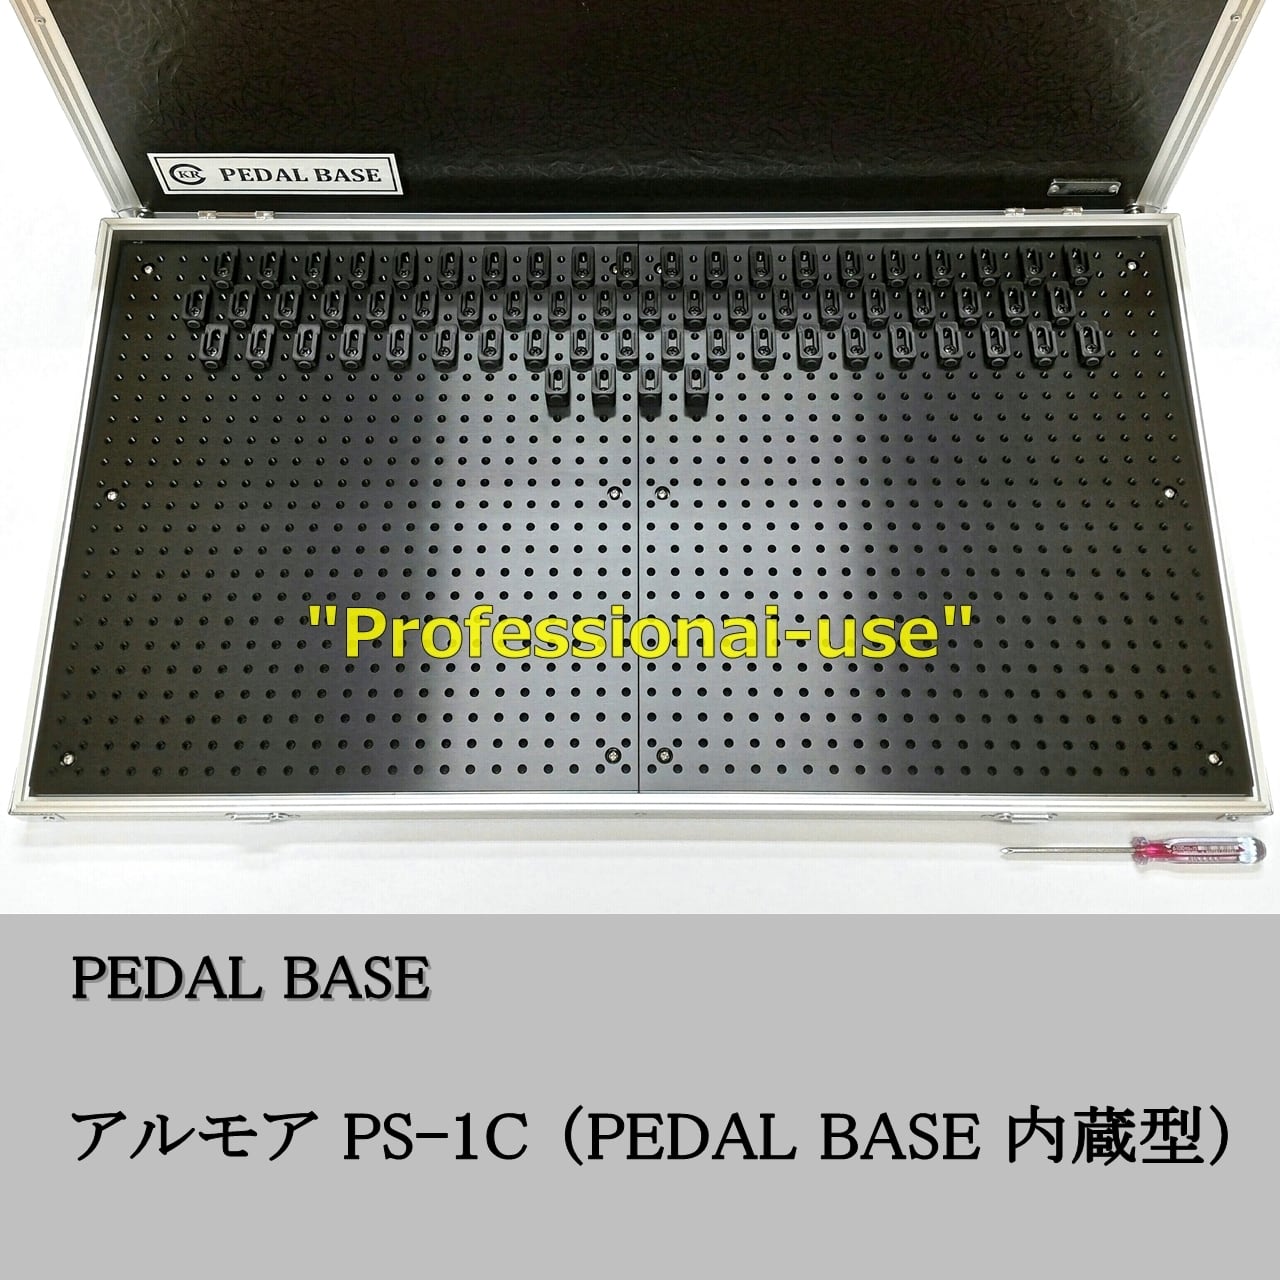 アルモア PS-1C PEDAL BASE 内蔵型 / ARMOR PS-1C with built-in PEDAL